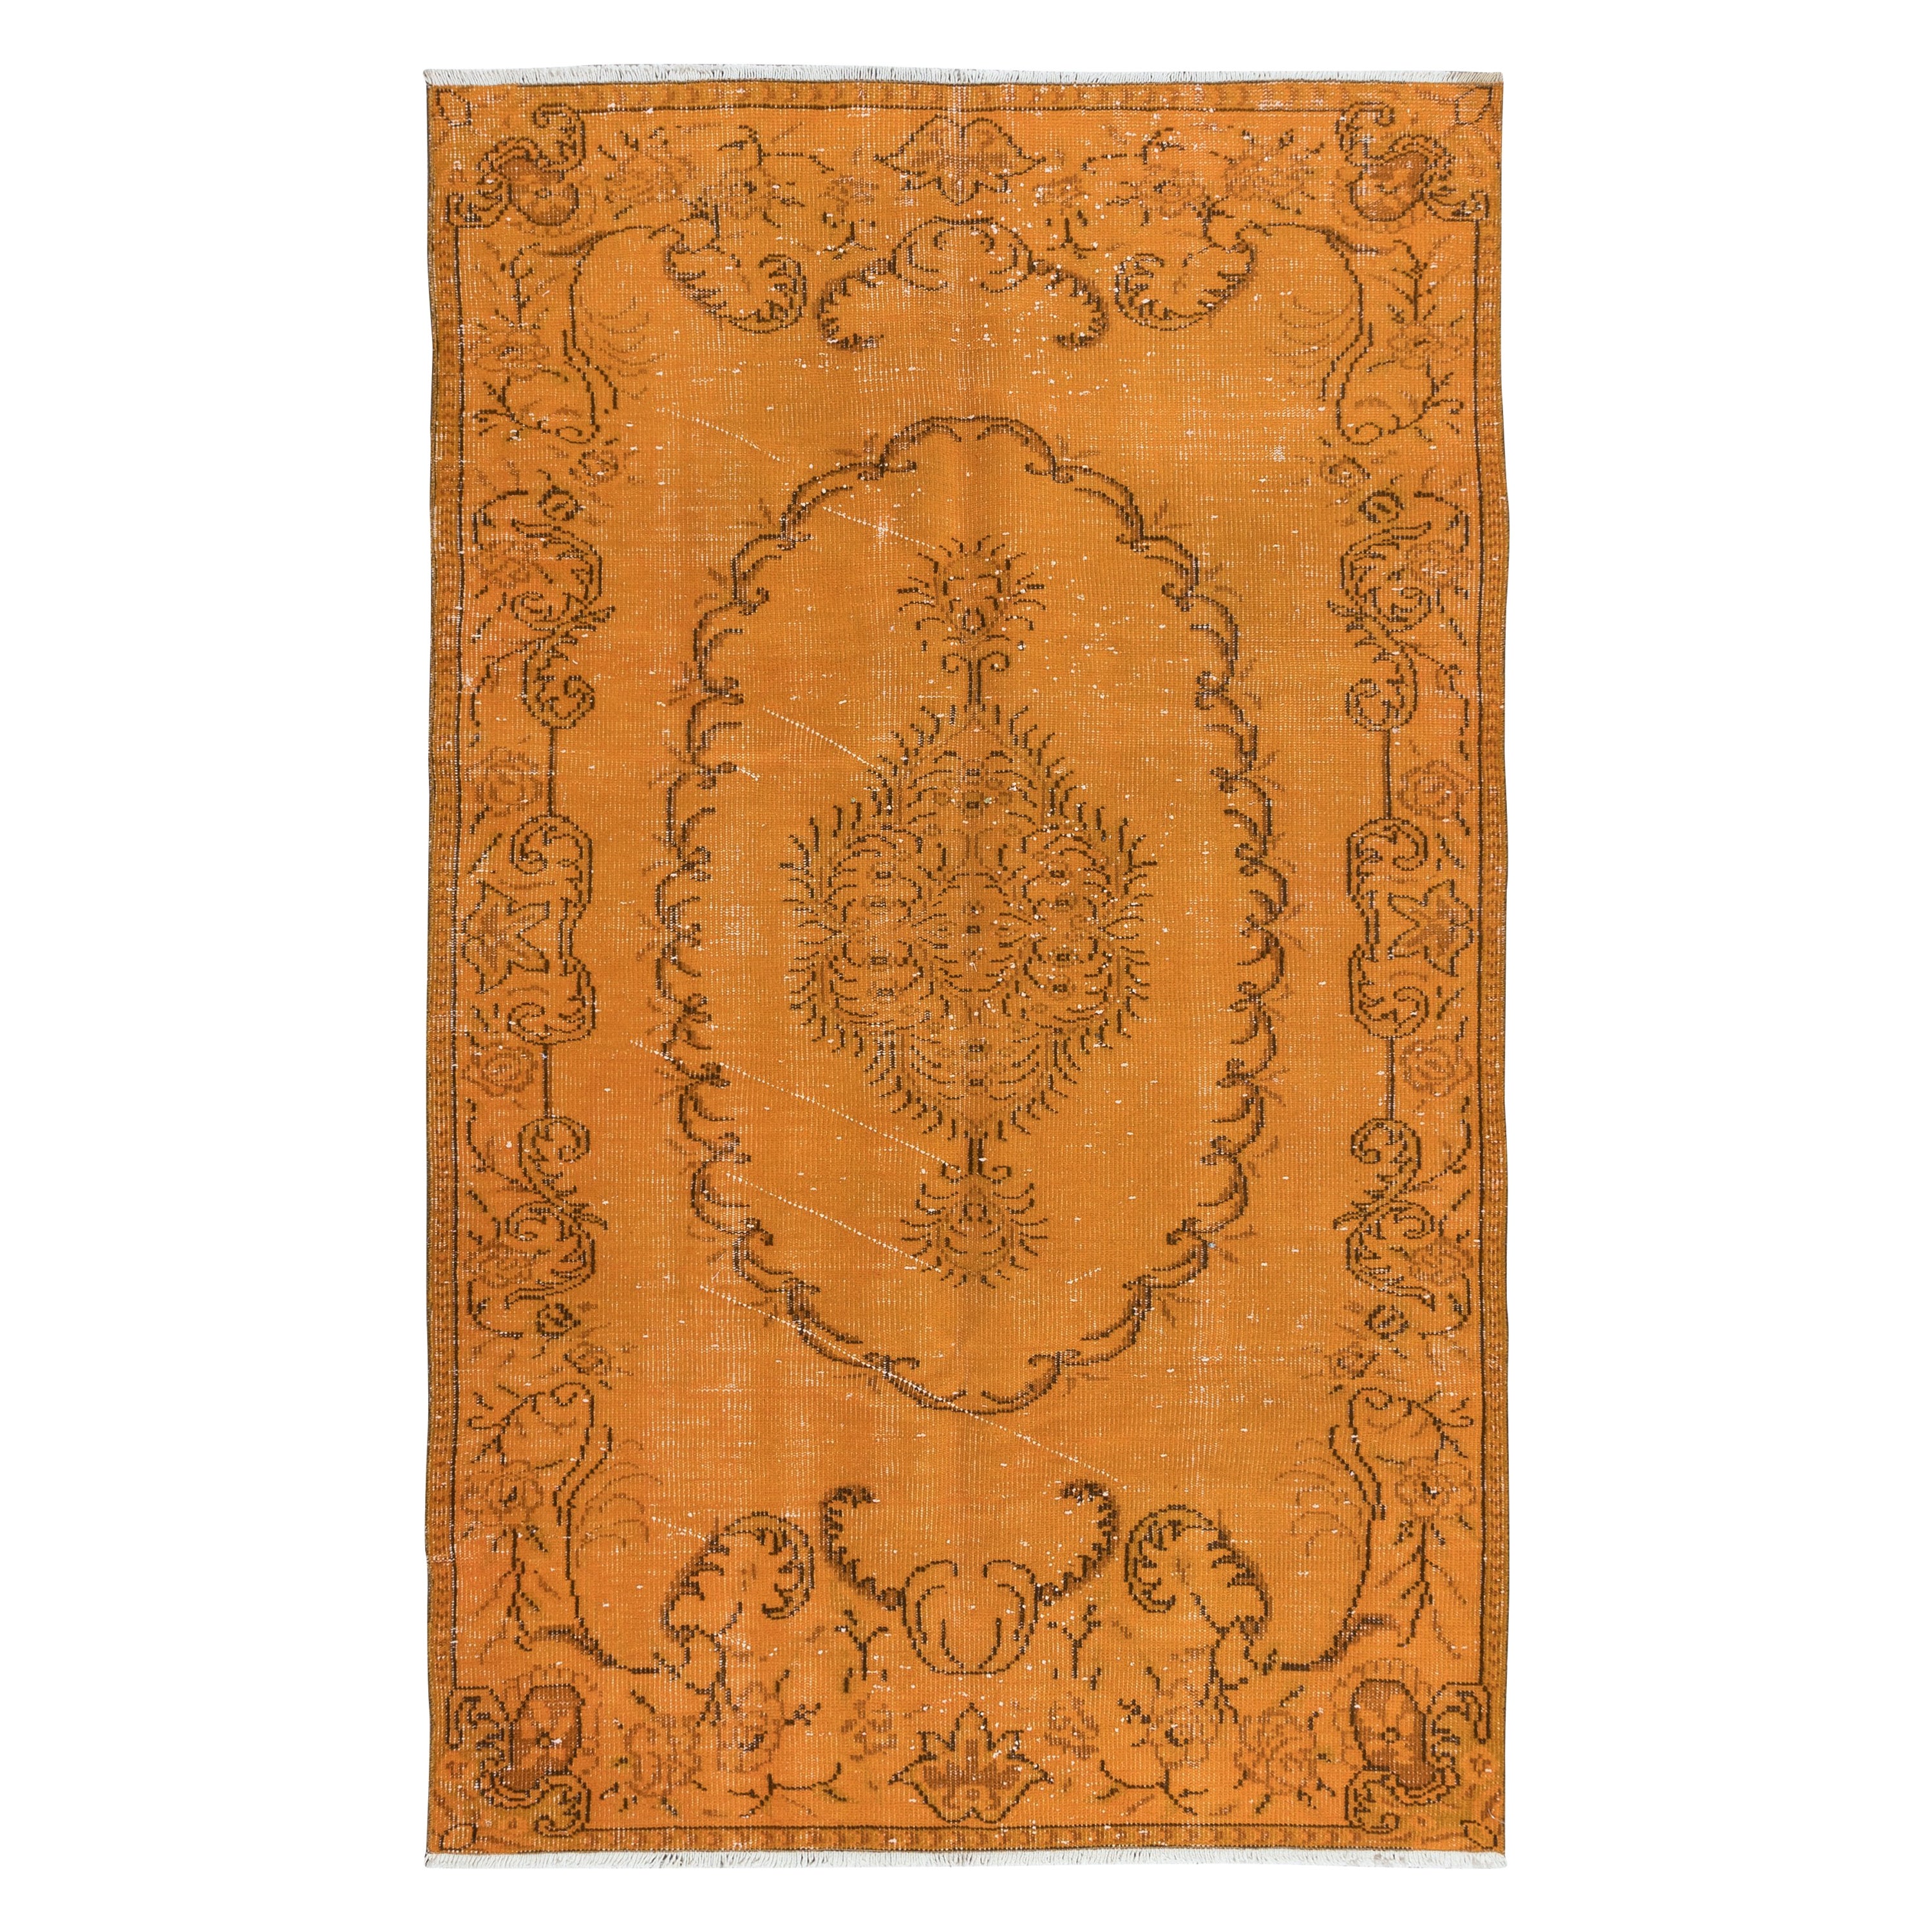 5x8 Ft Orange Handmade Turkish Area Rug, Bohem Eclectic Room Size Carpet For Sale